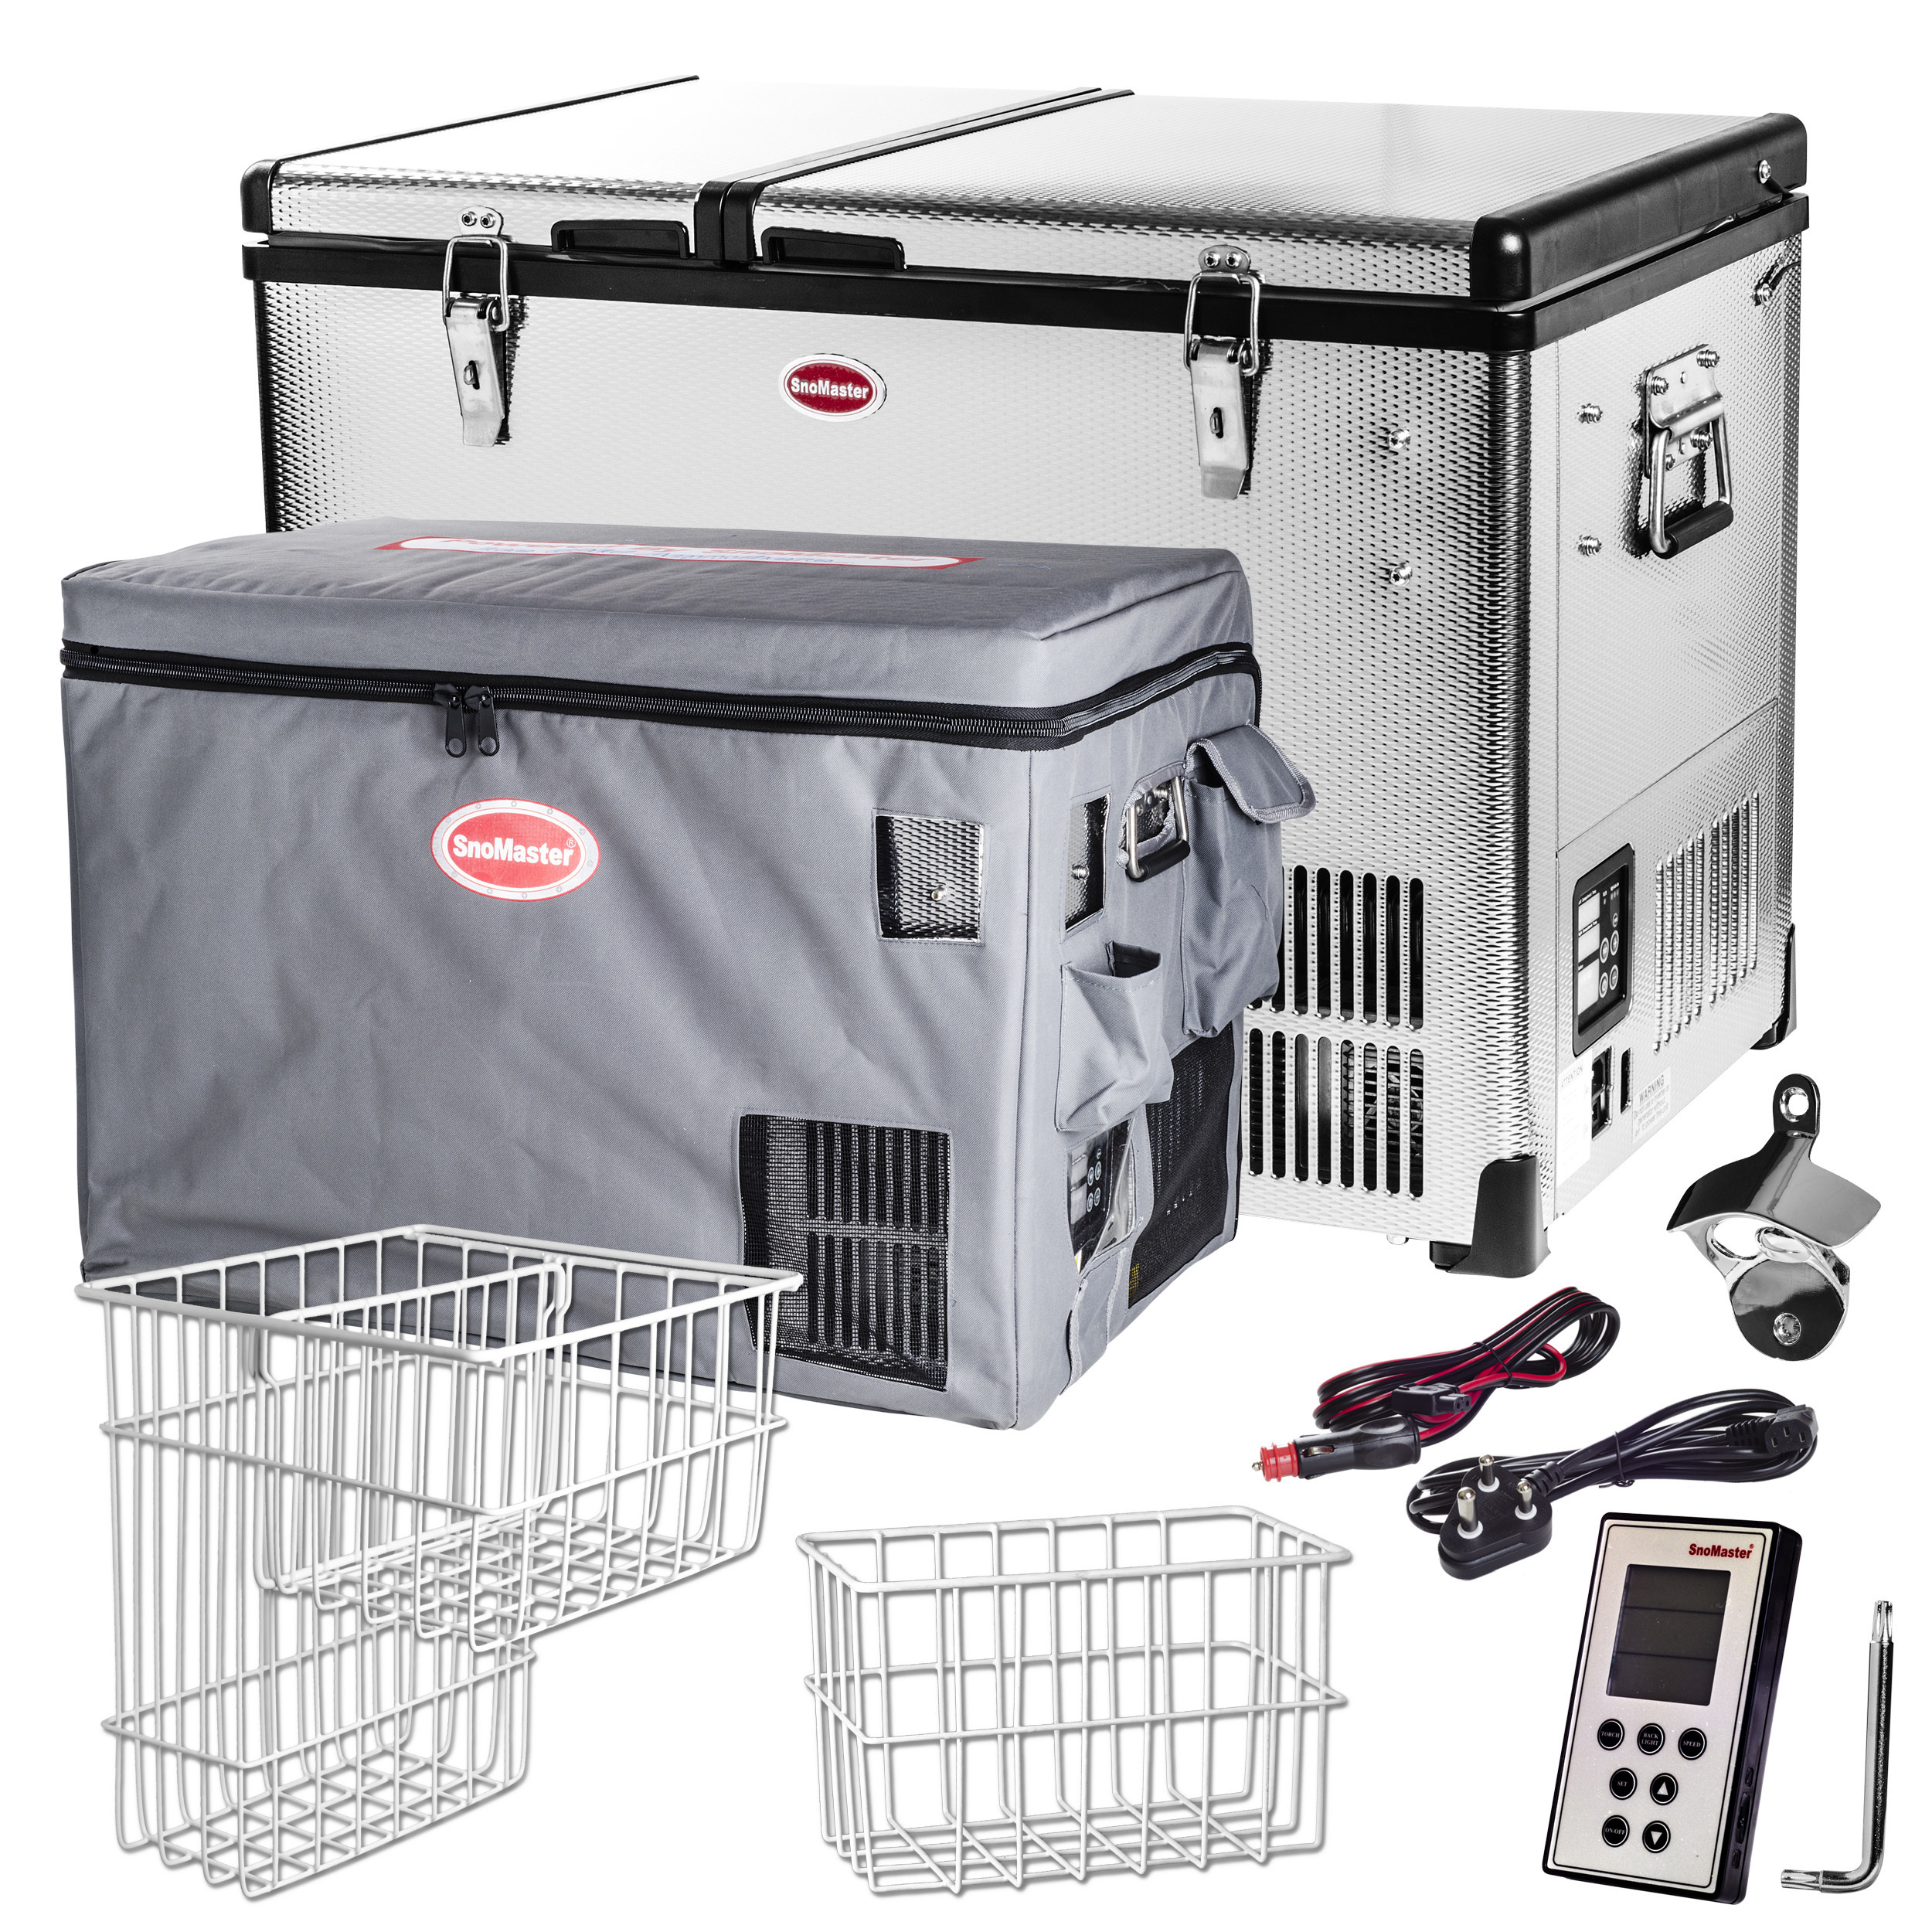 Réfrigérateur congélateur portable à double compartiment SNOMASTER  SMDZ-CL56D • 56 litres • 12v 24v 220v • SMDZ-CL56D